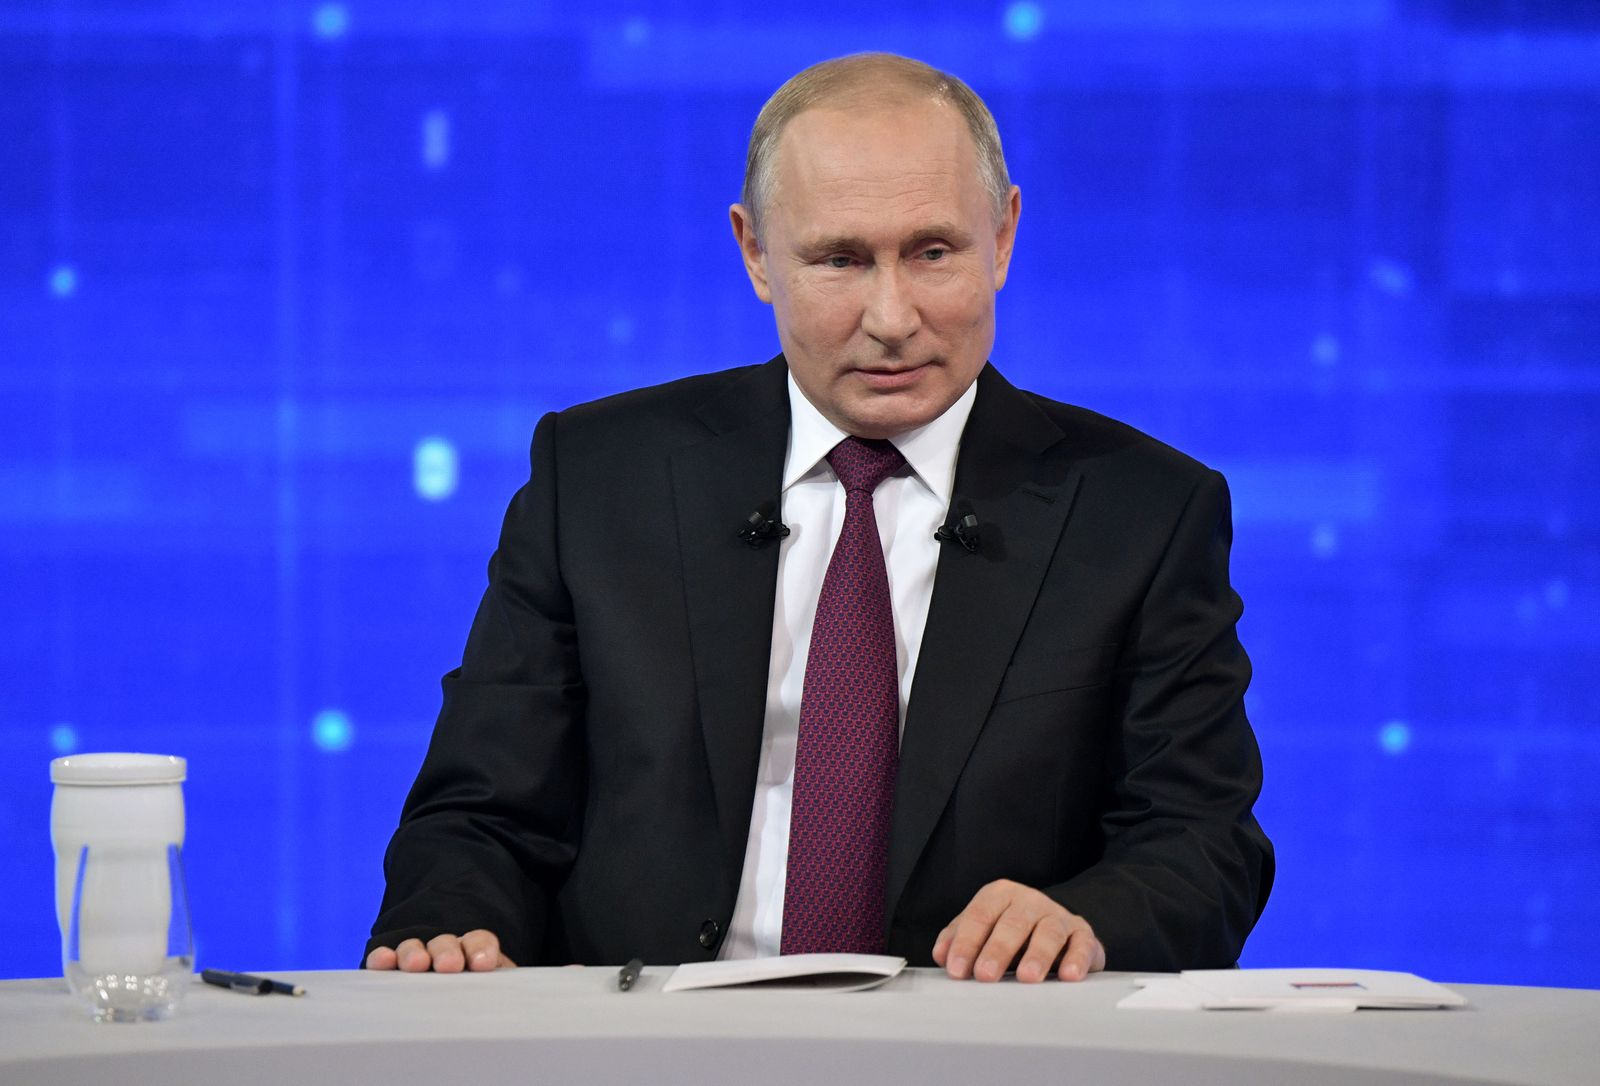 پوتین: حکومت پارلمانی مناسب روسیه نیست